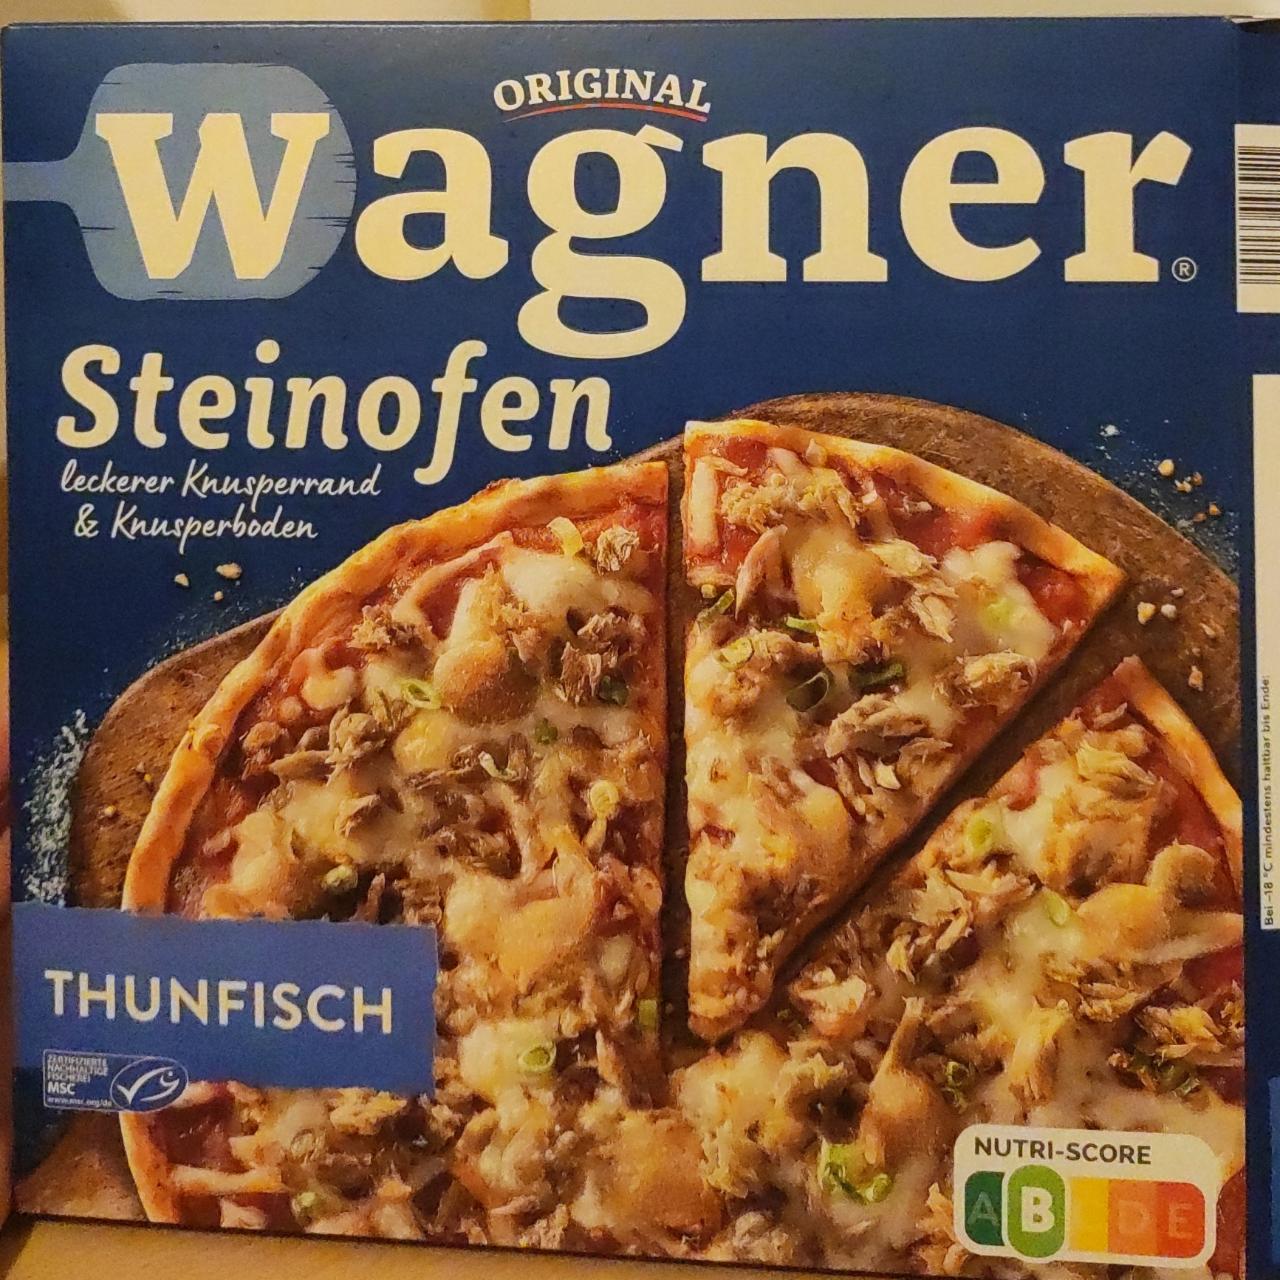 Fotografie - Steinofen Pizza Thunfisch Original Wagner